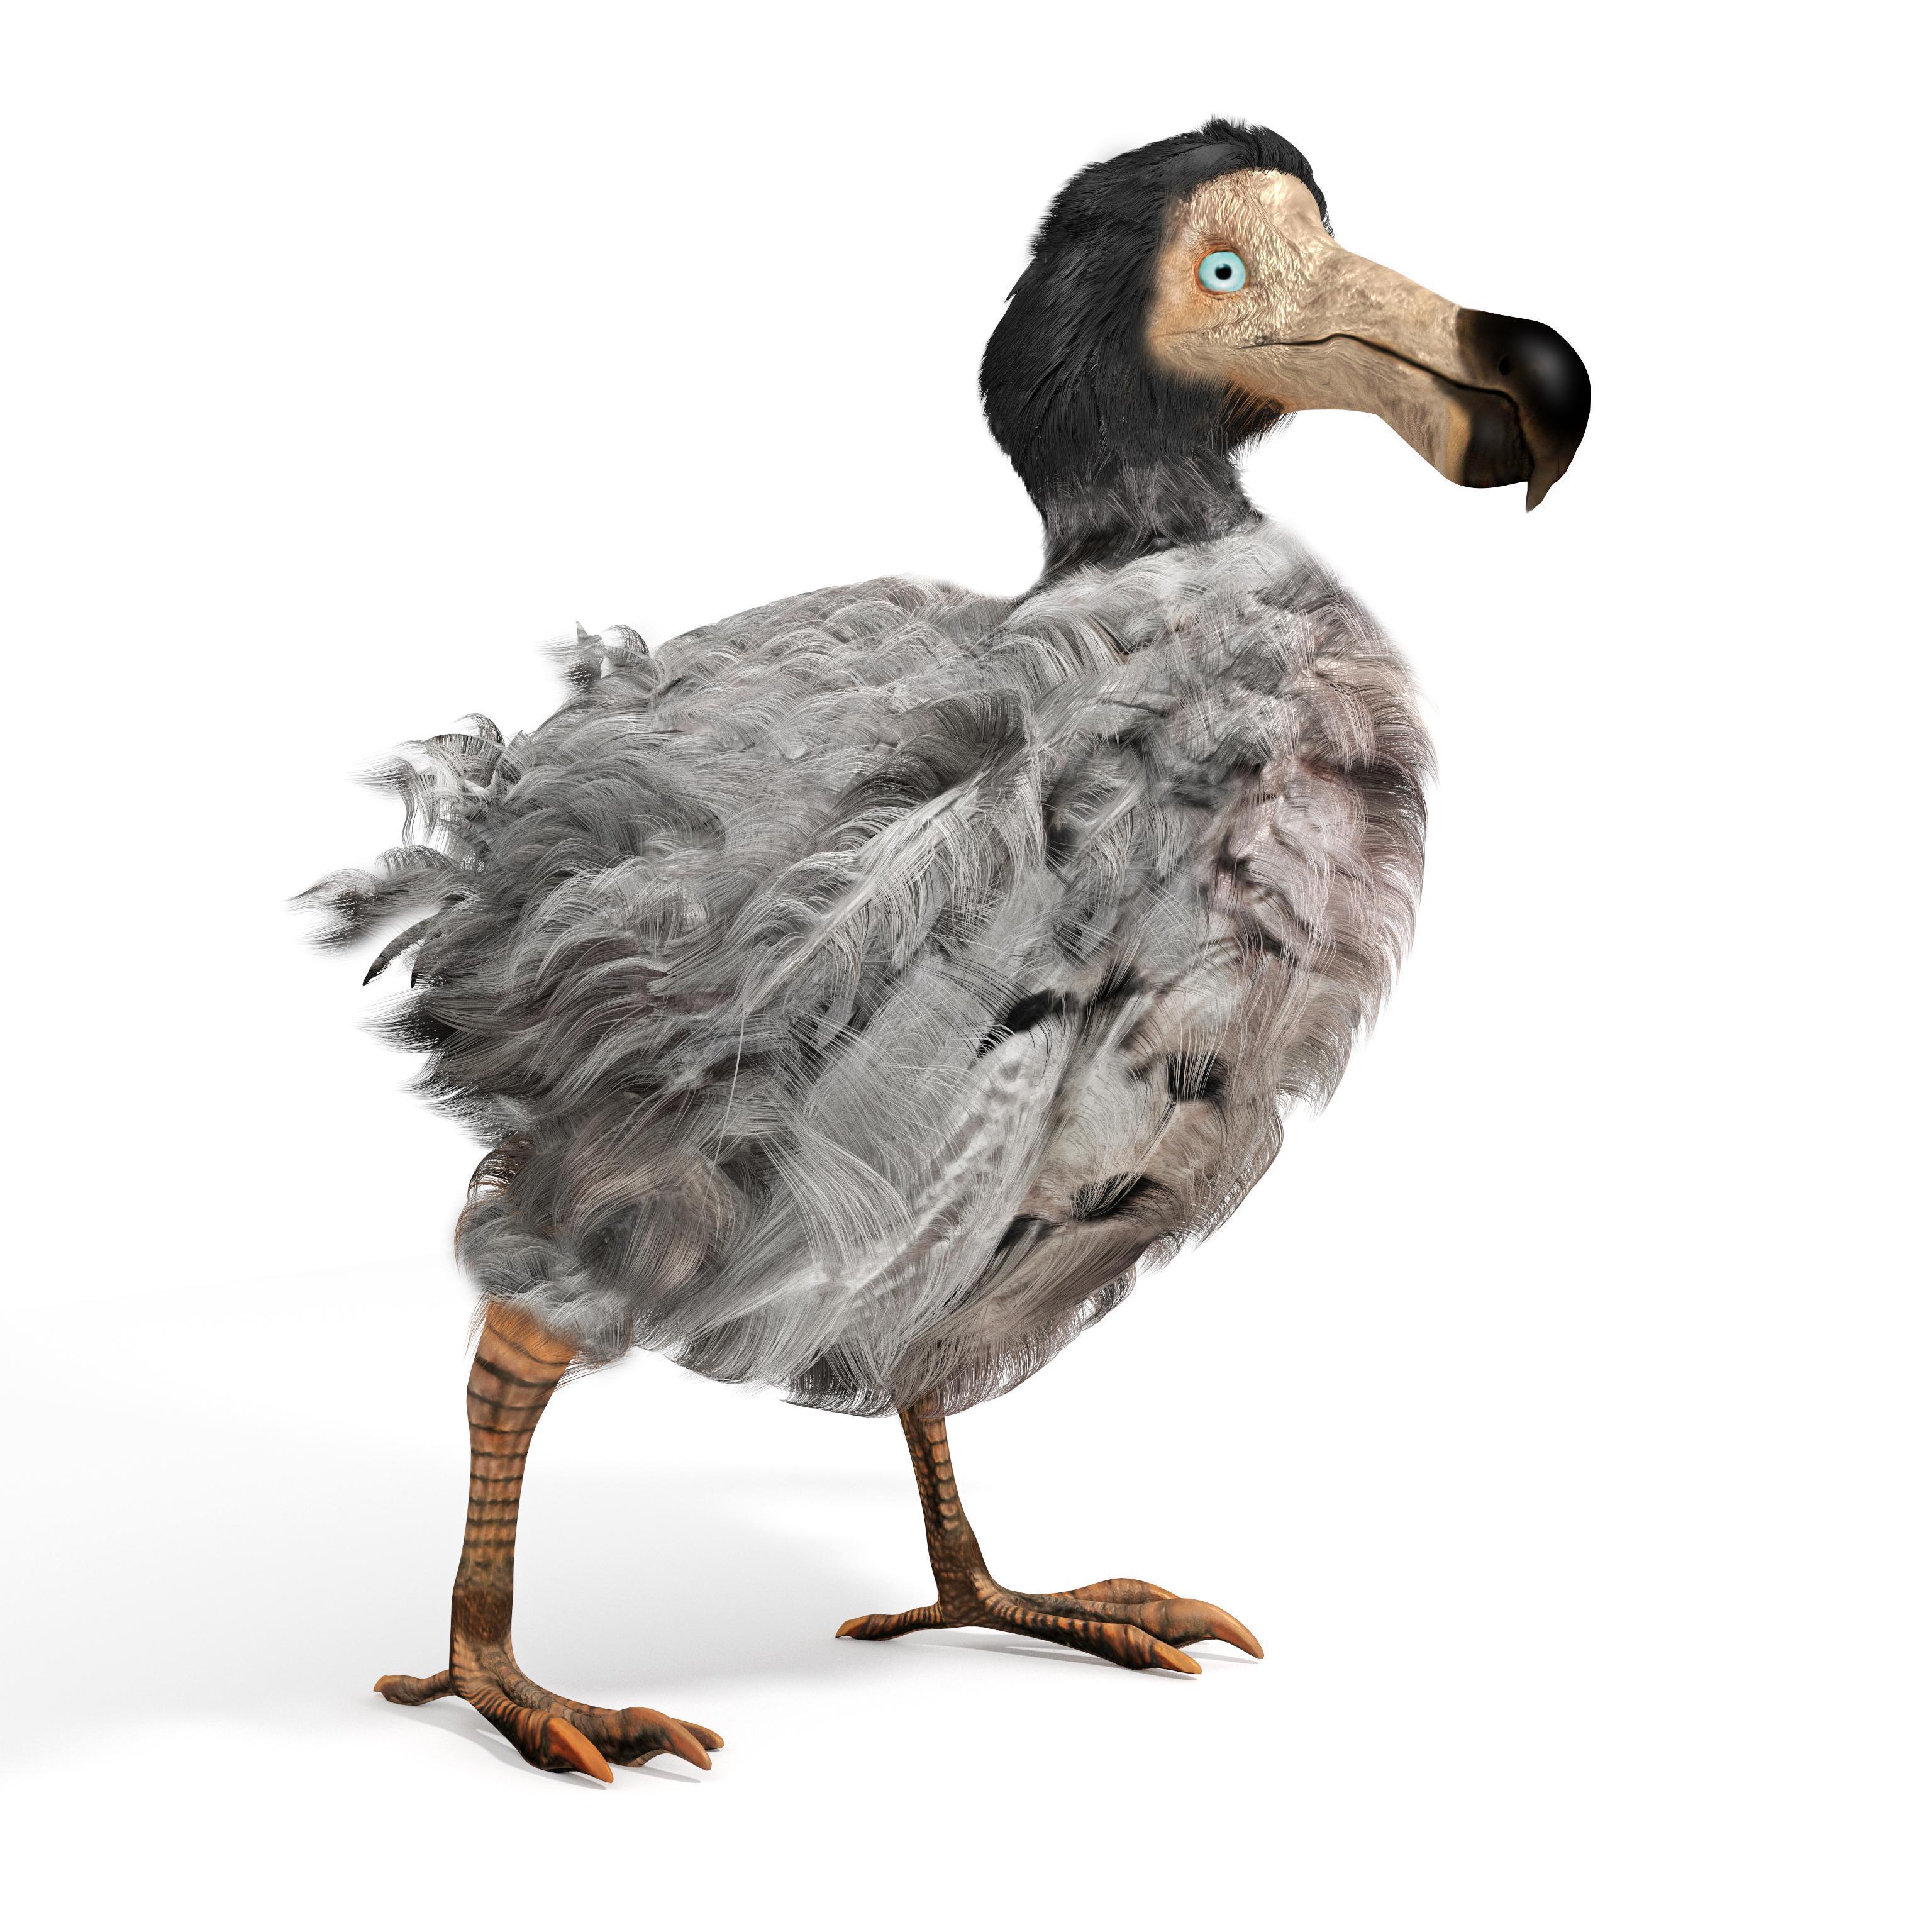 Dodolar hakkında kısa bilgiler: Nesli neden tükendi Dodo kuşu özellikleri